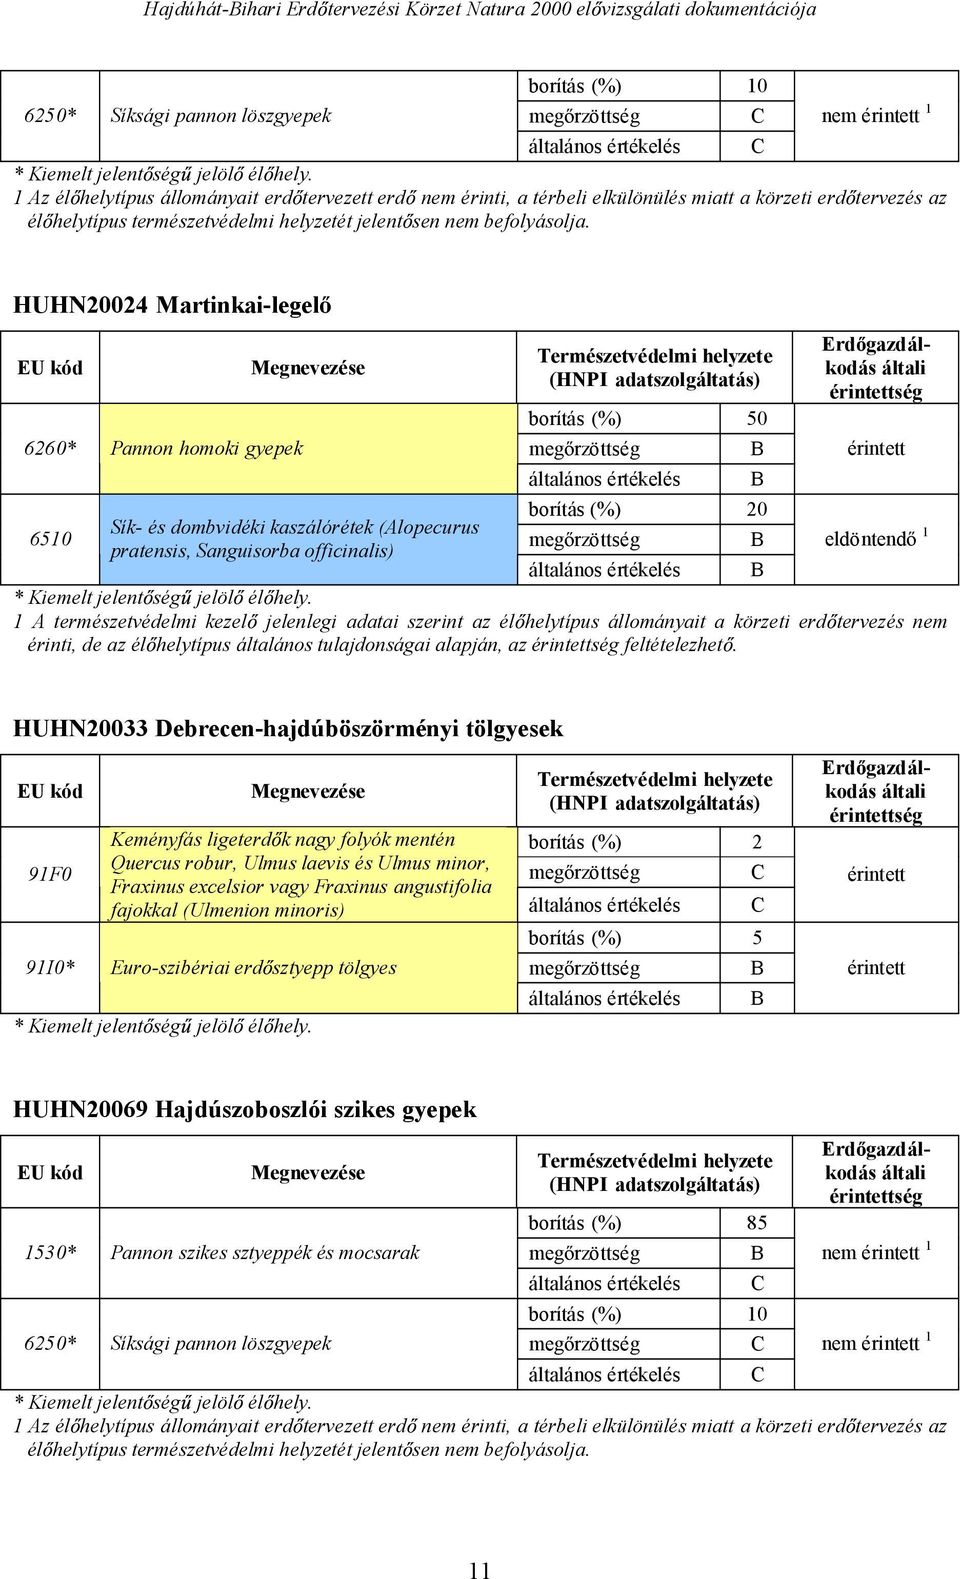 HUHN20024 Martinkai-legel EU kód 6260* Pannon homoki gyepek Megnevezése Természetvédelmi helyzete (HNPI adatszolgáltatás) borítás (%) 50 meg rzöttség Erd gazdálkodás általi érintettség érintett